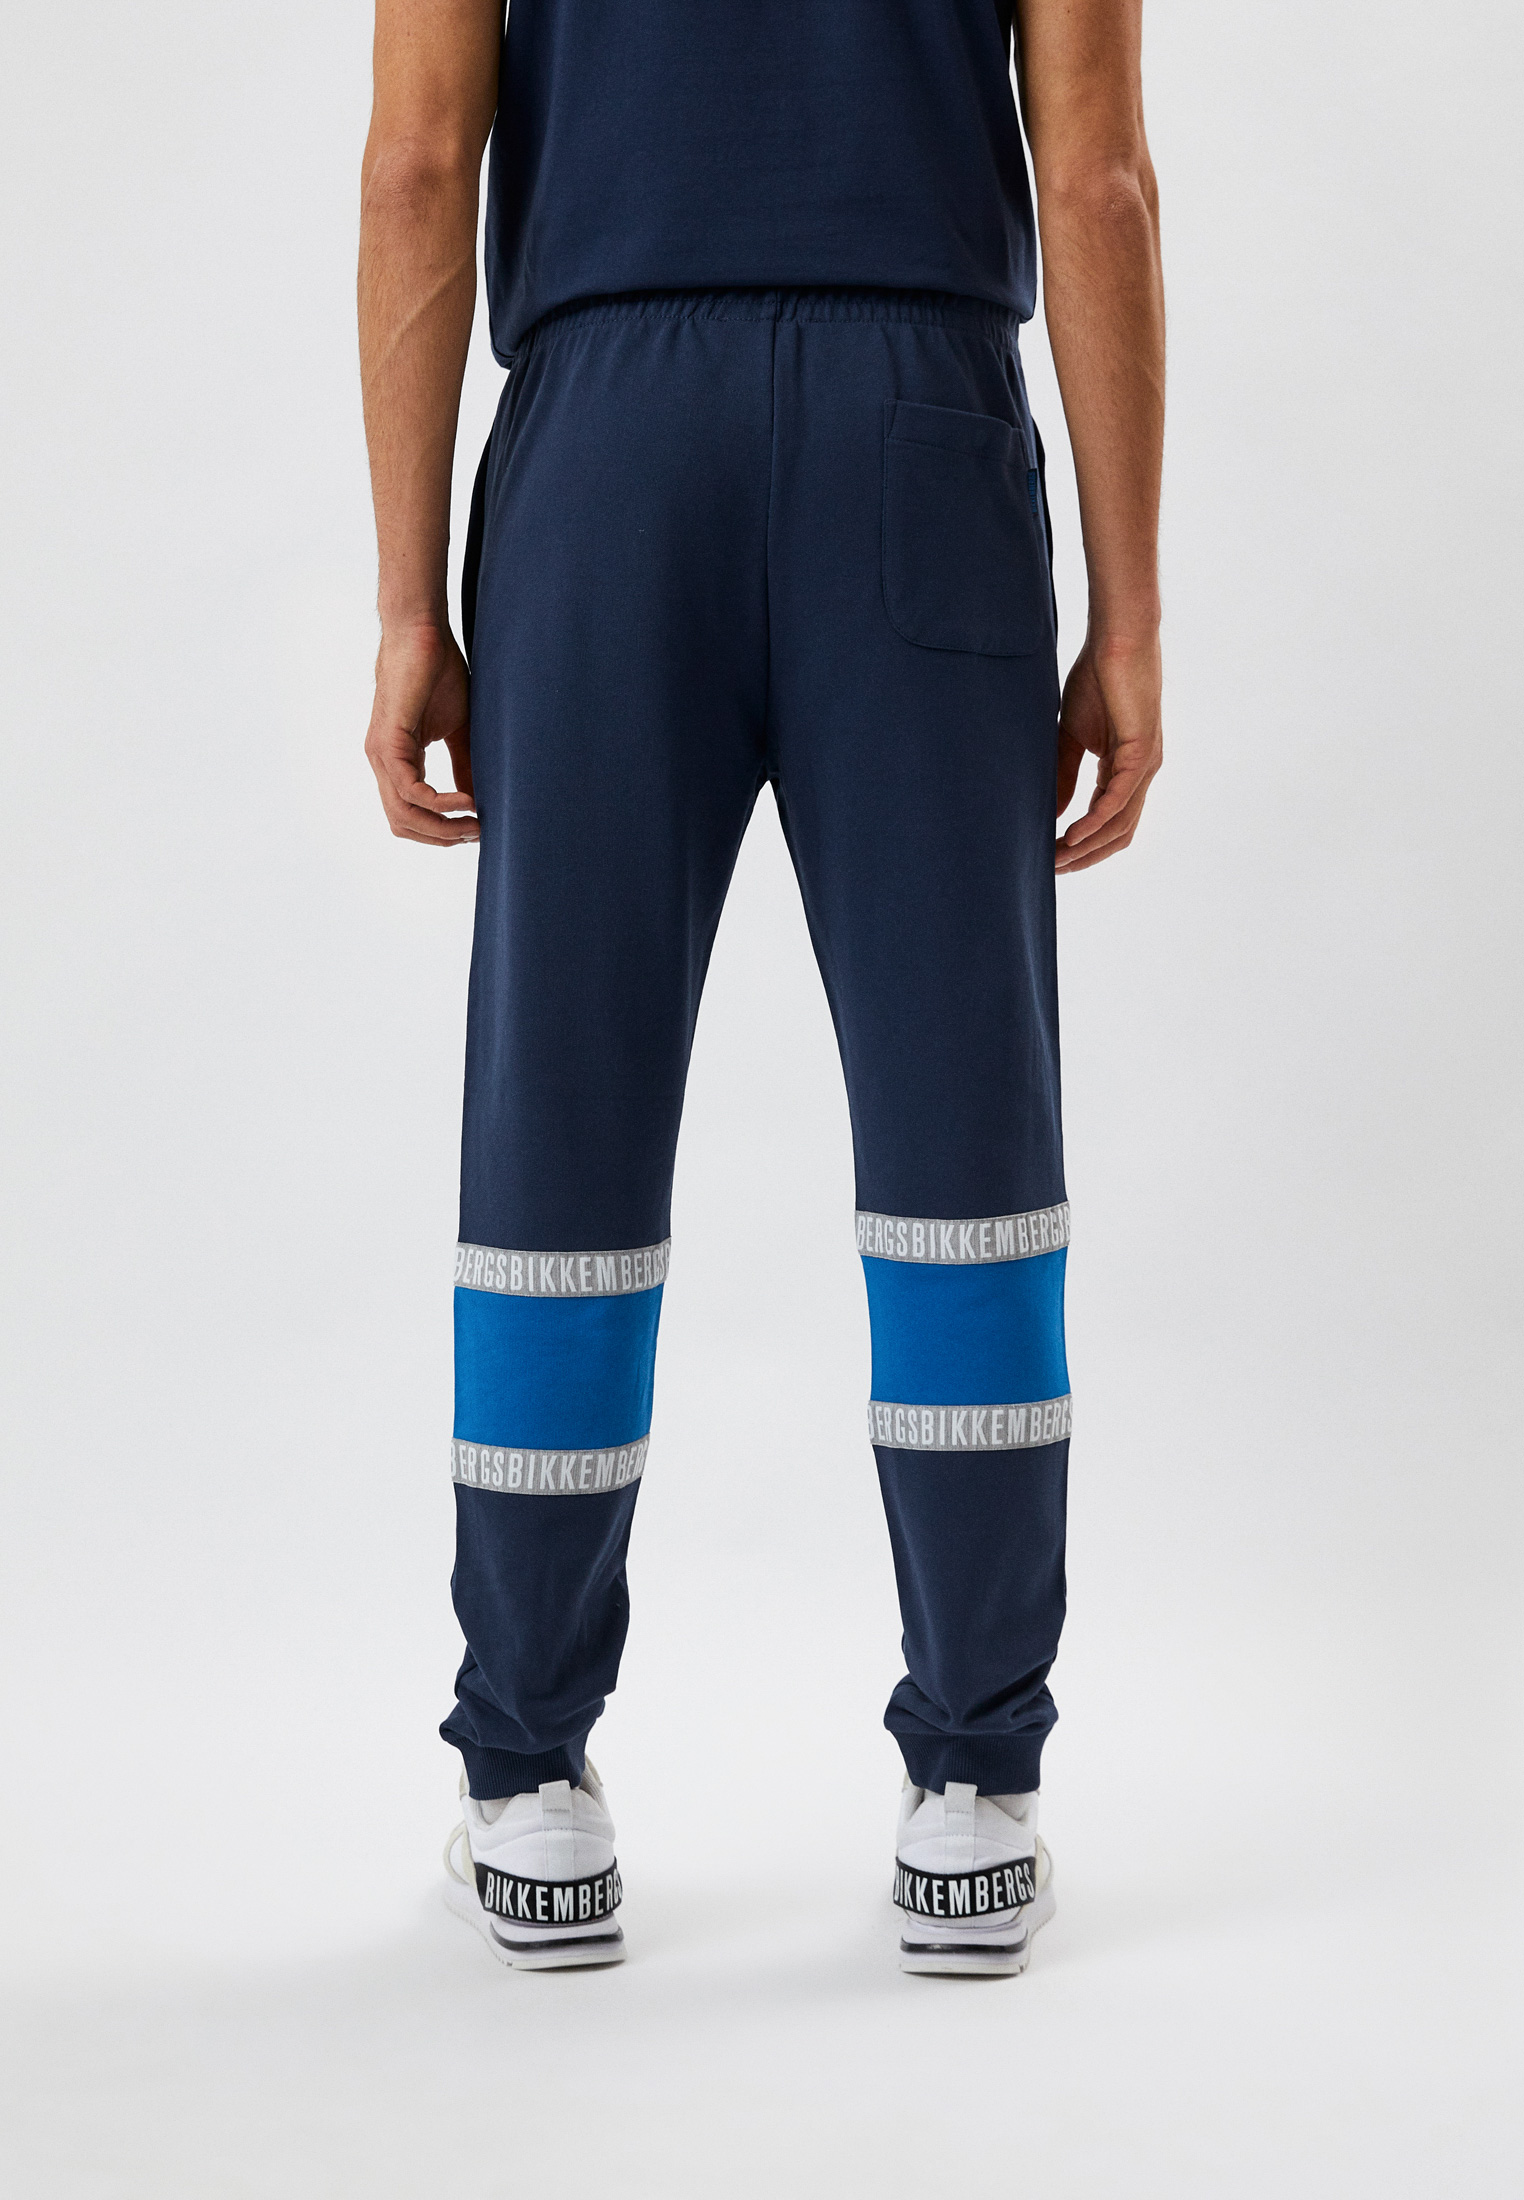 Мужские спортивные брюки Bikkembergs (Биккембергс) C 1 242 80 M 4351: изображение 3